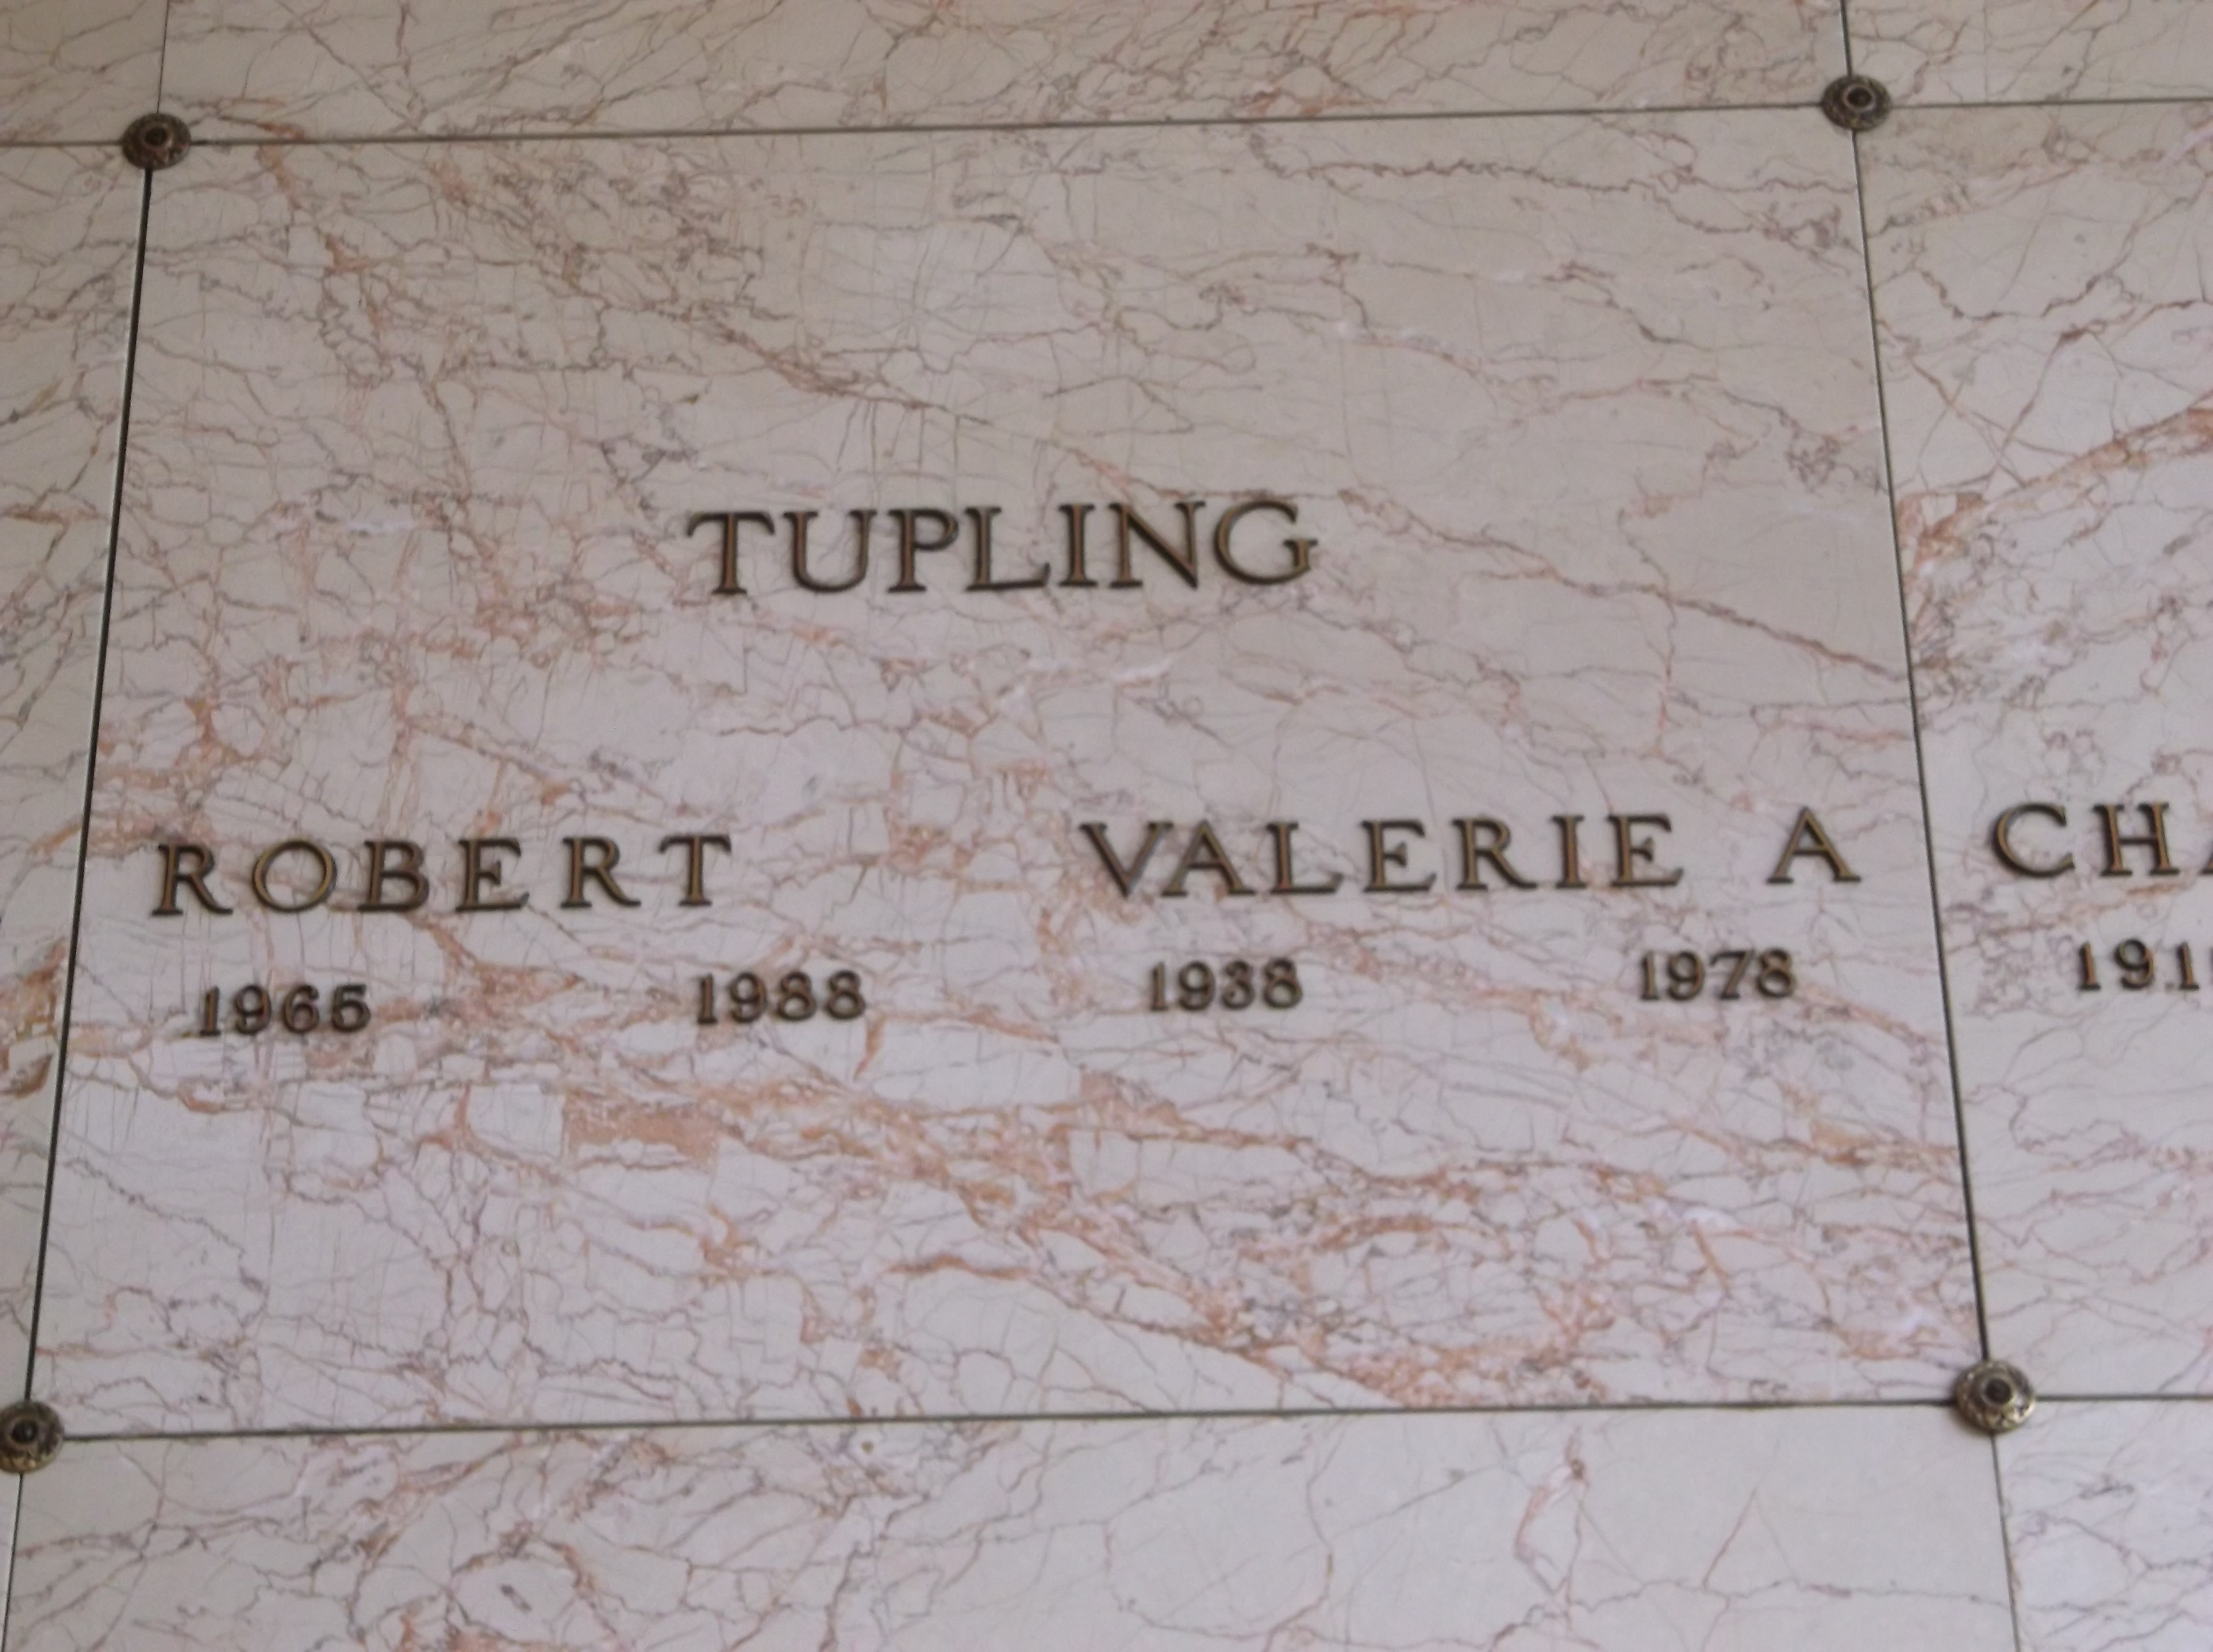 Robert Tupling